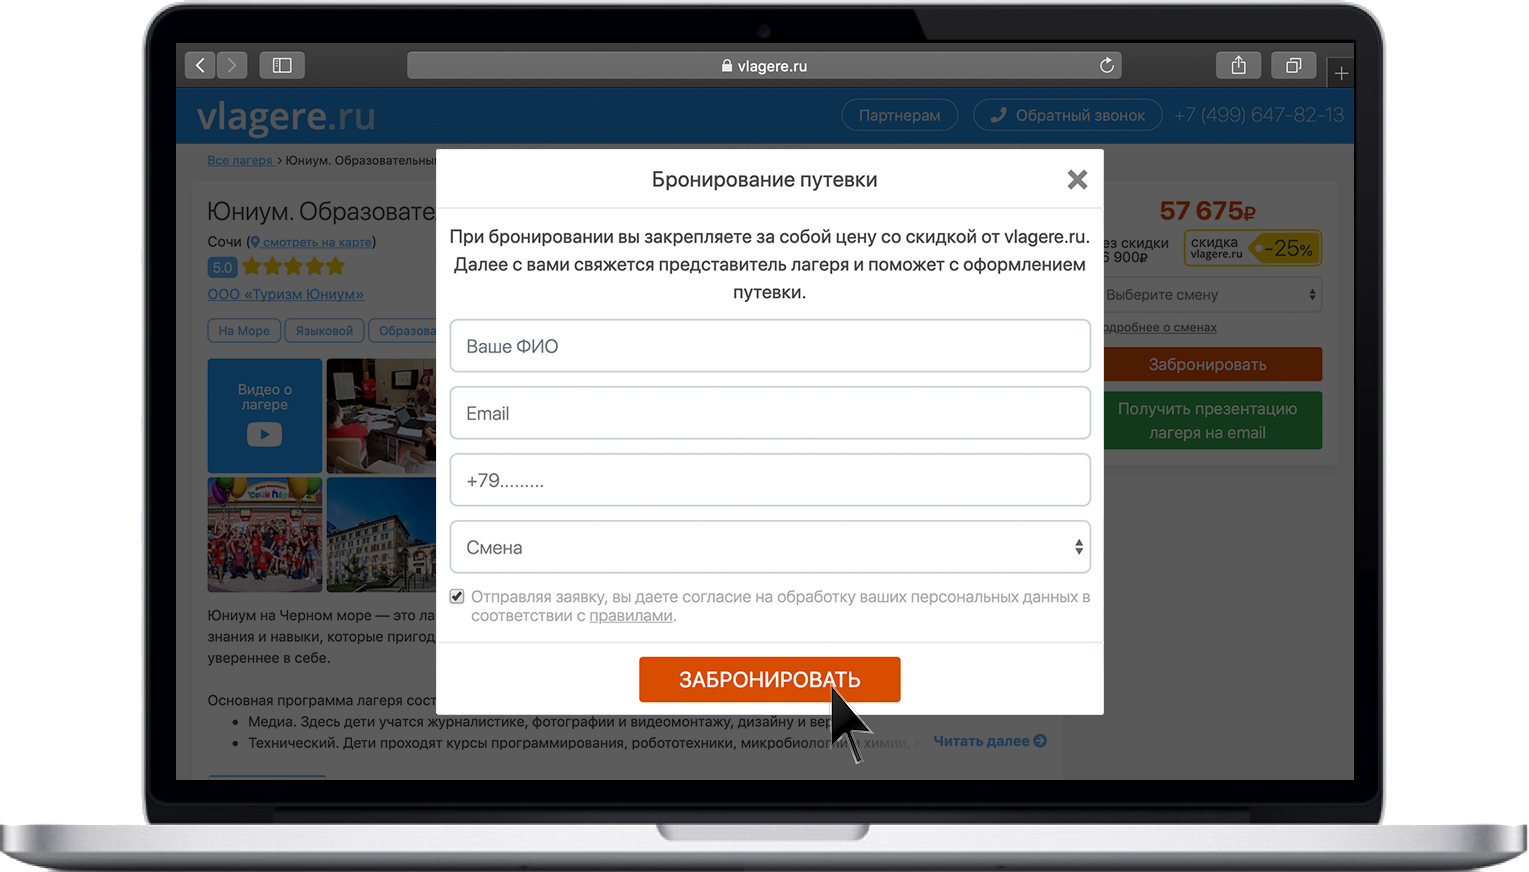 Оформление путевки на vlagere.ru